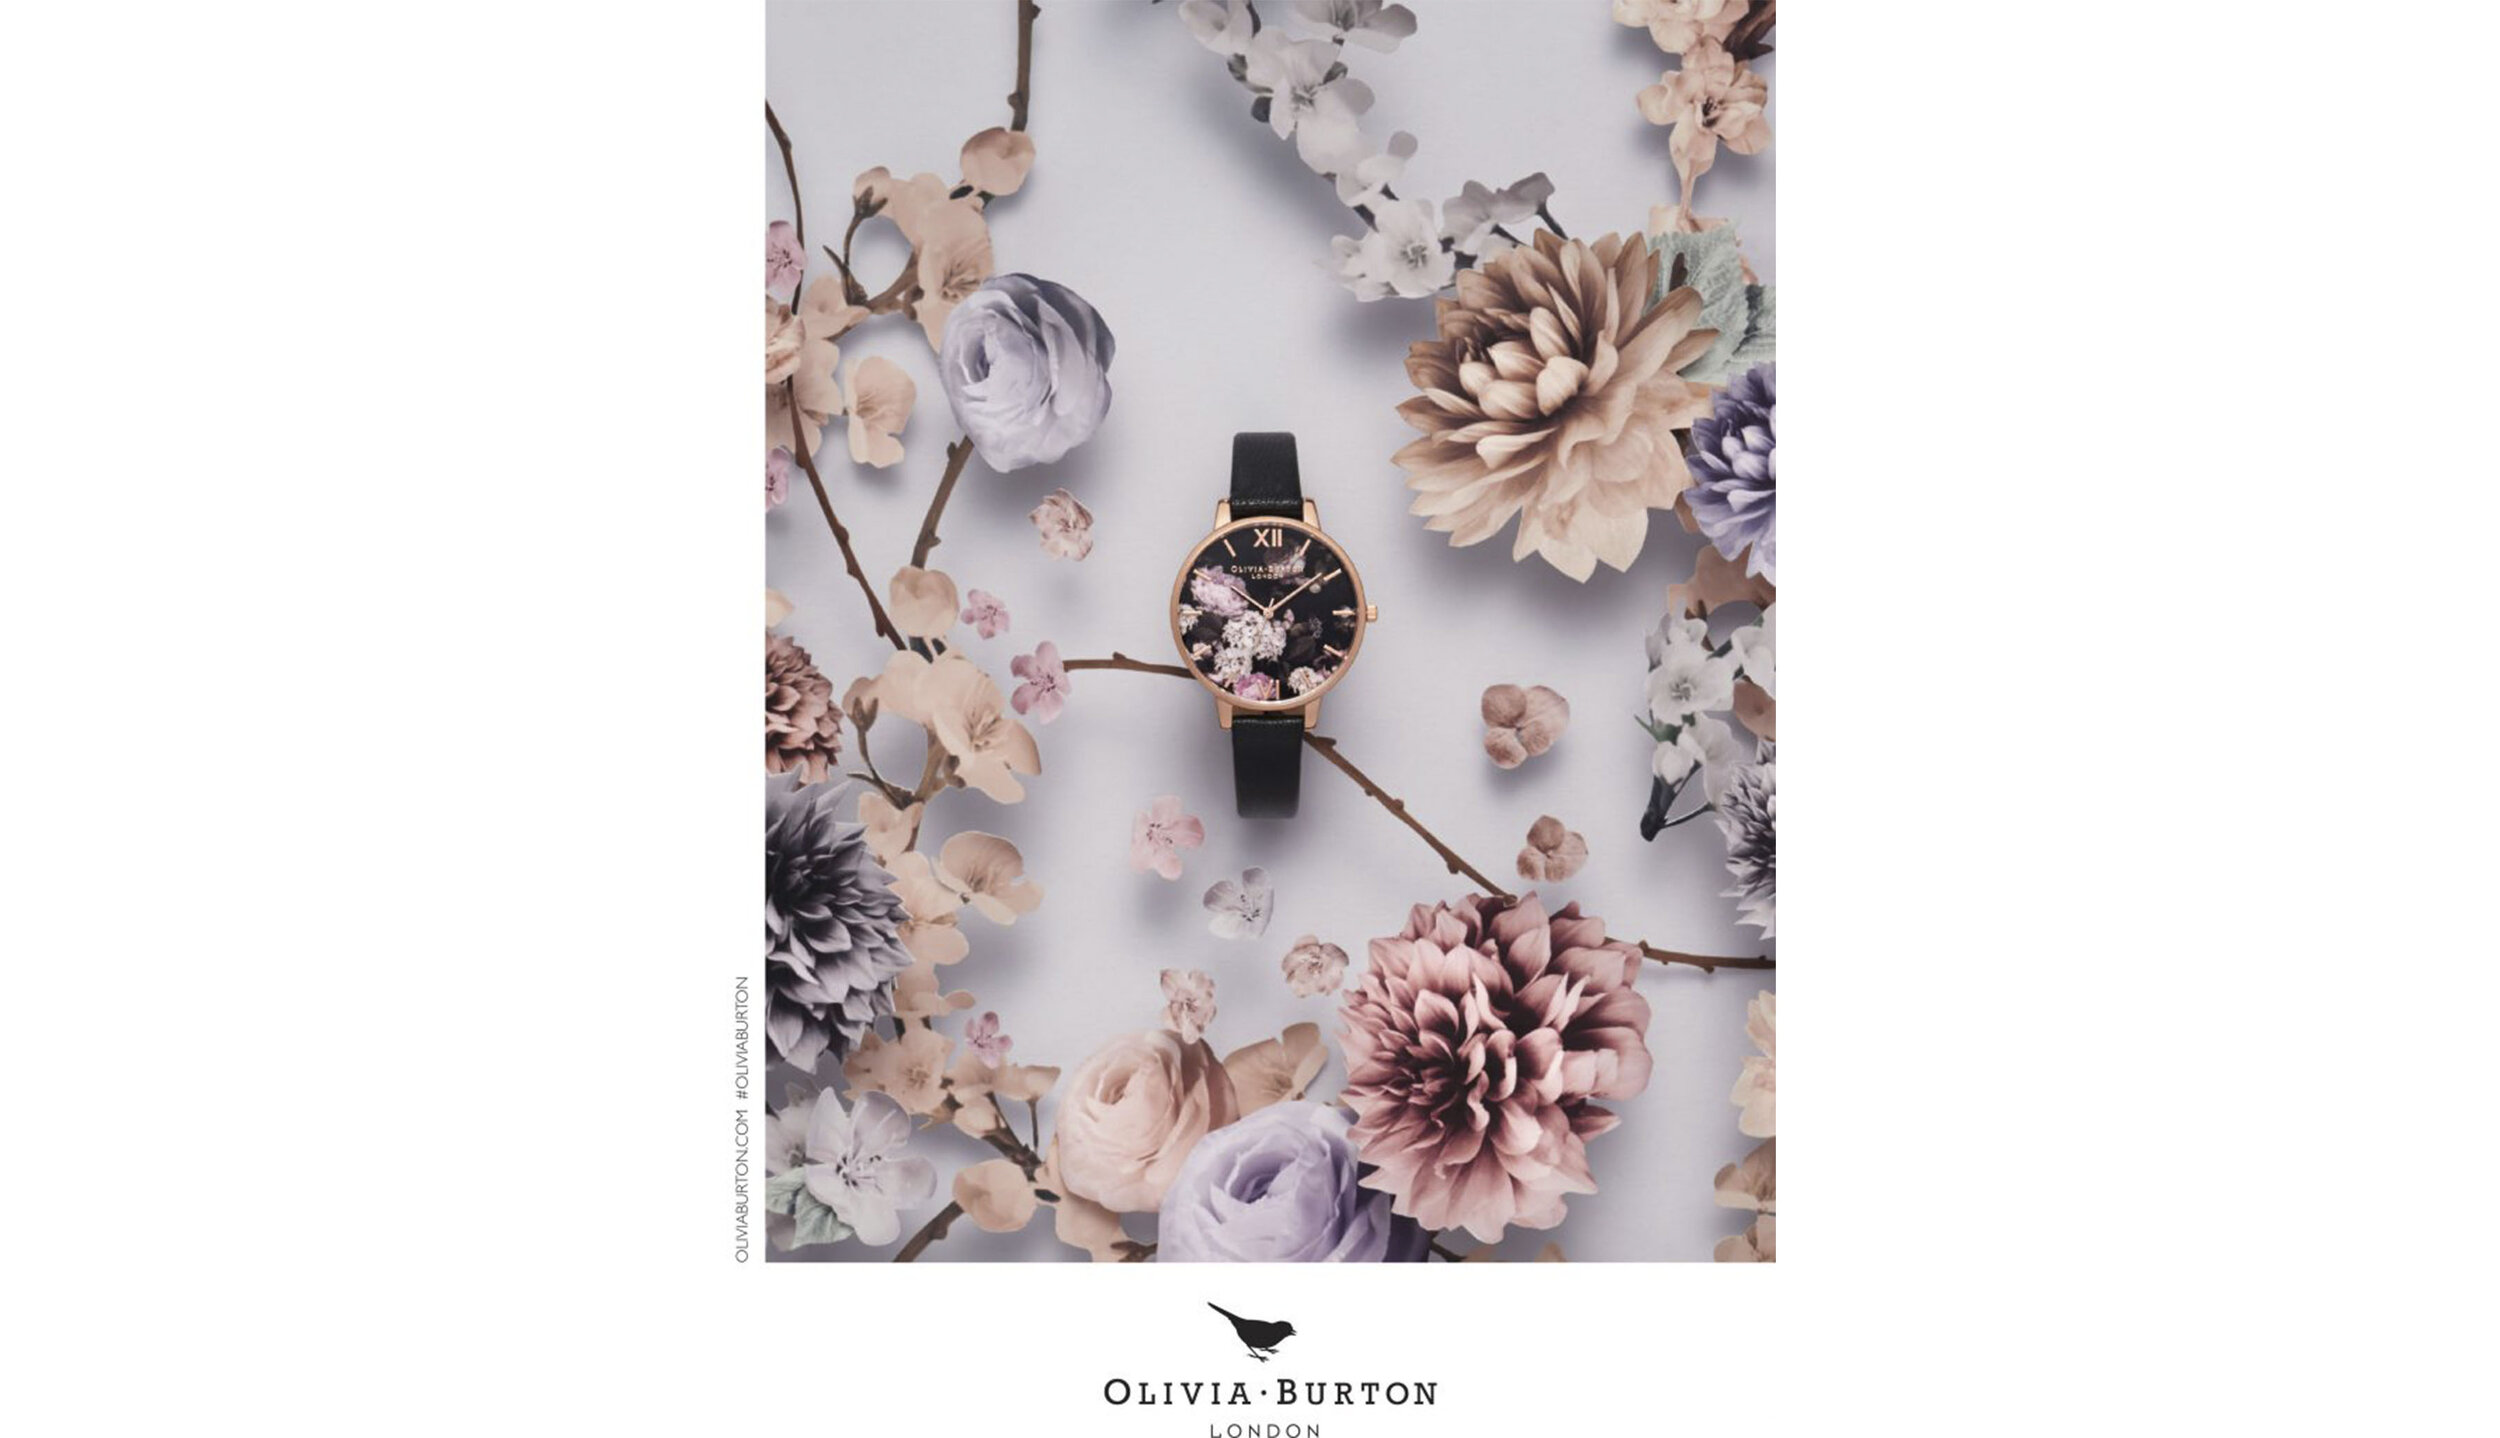 oliviaburton-zoebradley-paper-set-design-watches-flowers-paperart-fashion-campaign2.jpg